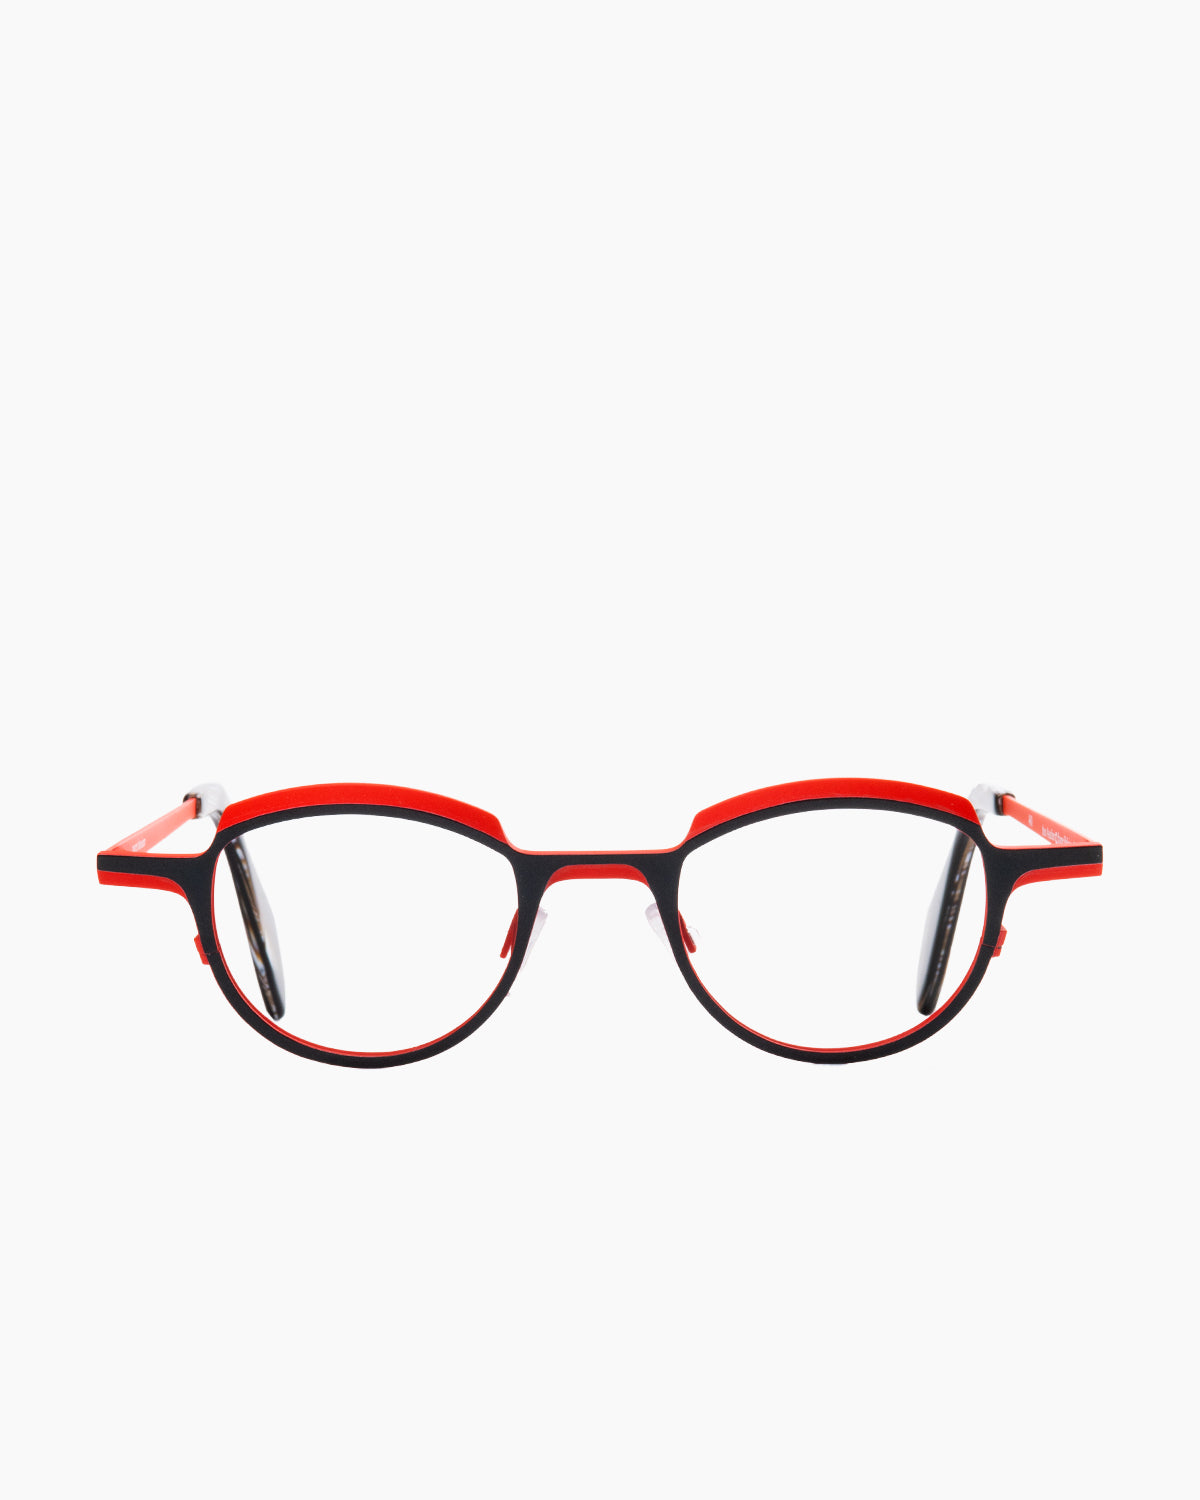 Theo - asscher - 460 | Bar à lunettes